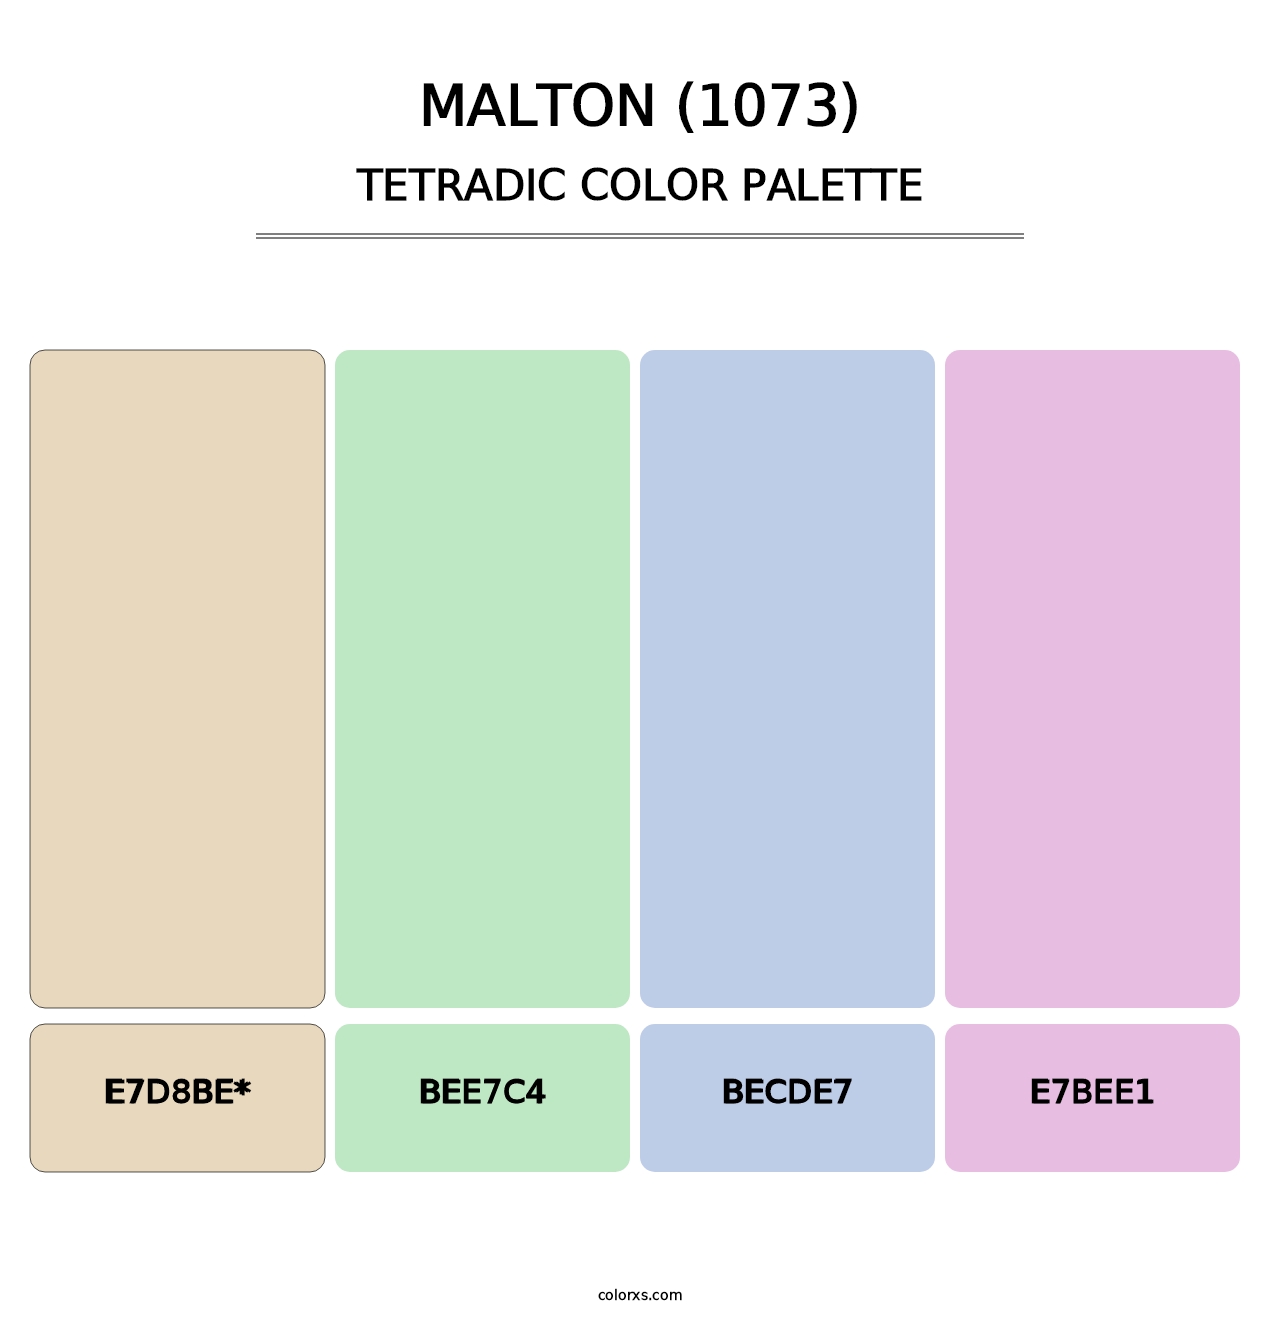 Malton (1073) - Tetradic Color Palette